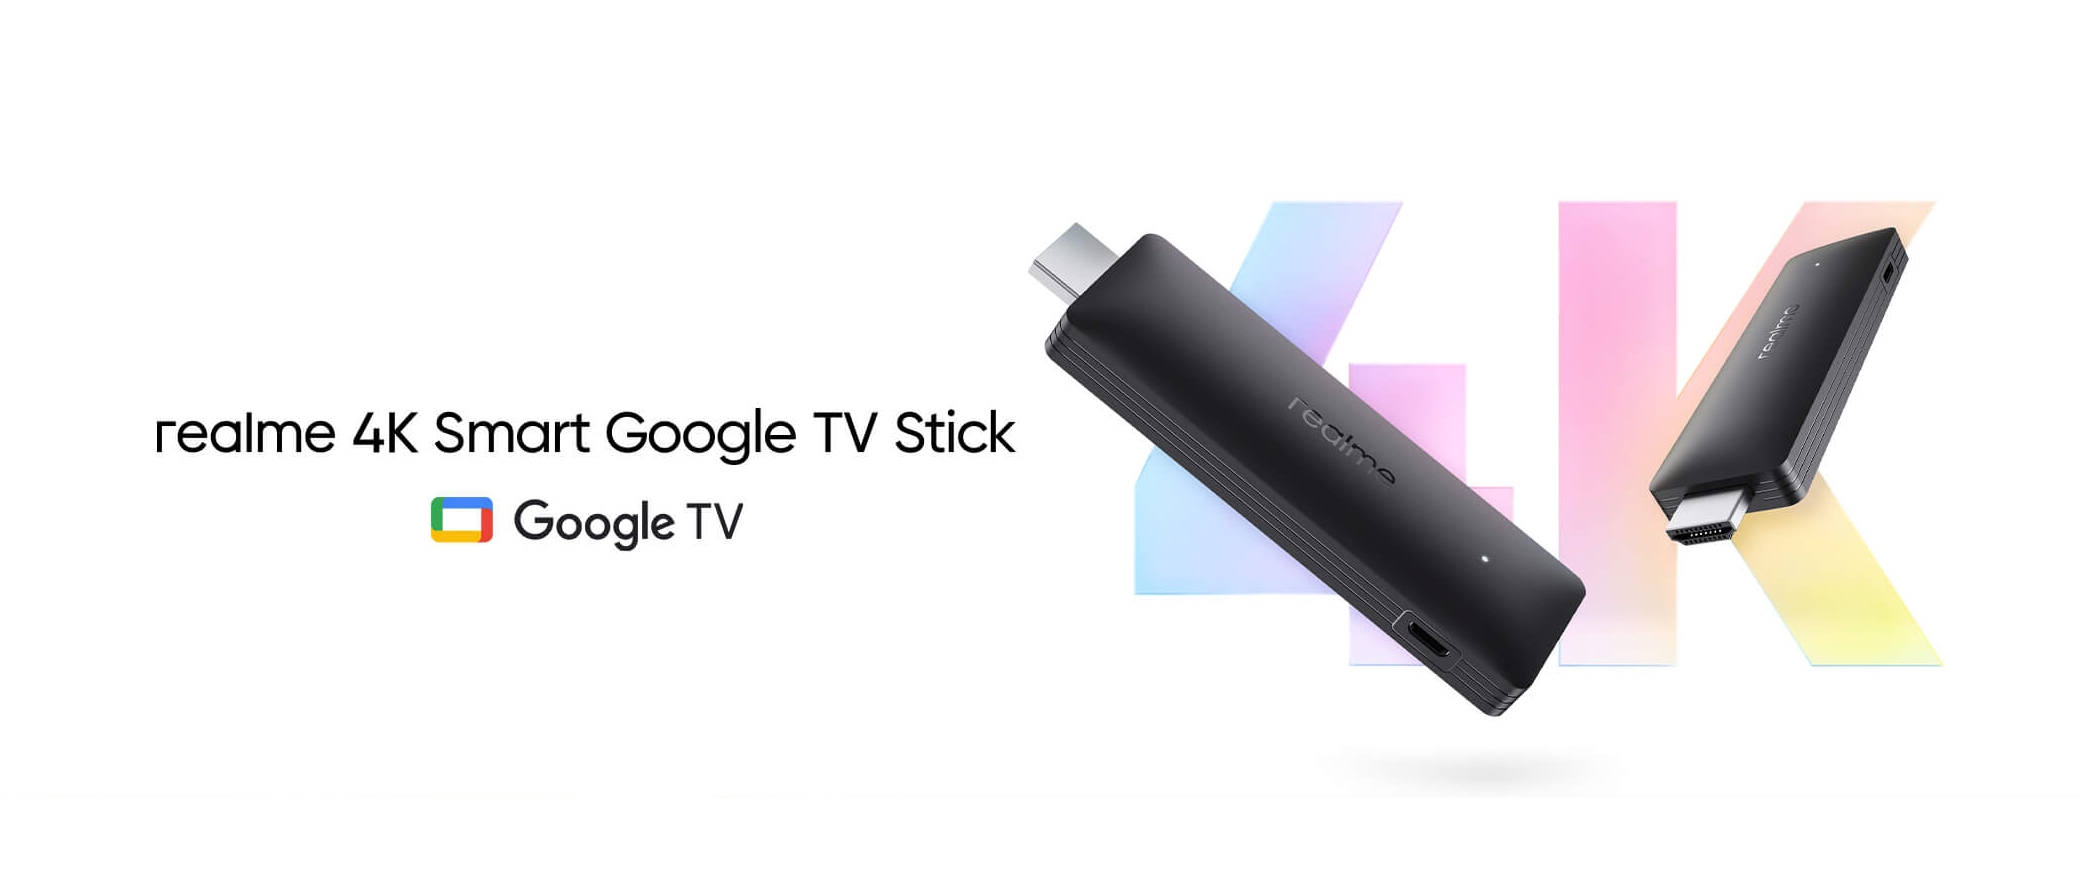 Realme розповіла подробиці щодо ТБ-приставки Realme Smart TV Stick: підтримка 4K, HDMI 2.1 та Google TV на борту